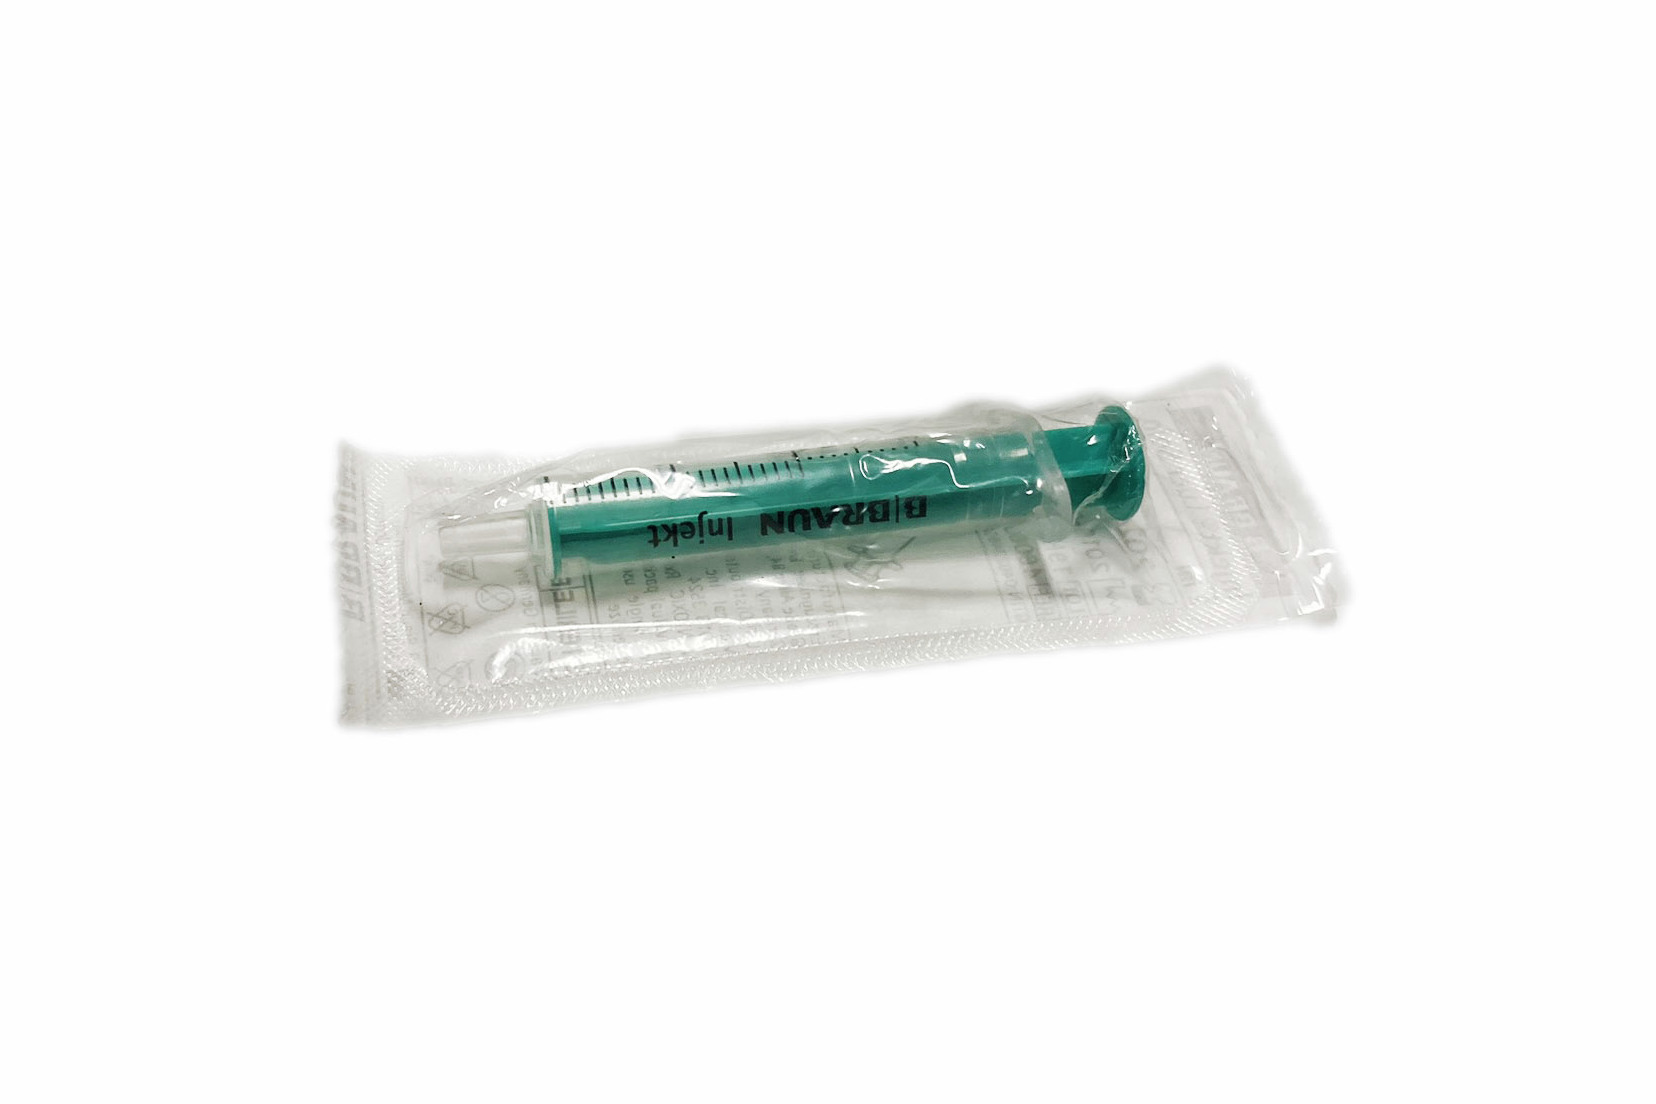 Glirex NatureSupplies - Fecskendő 3 ml (gyógyszerezéshez, kényszeretetéshez)